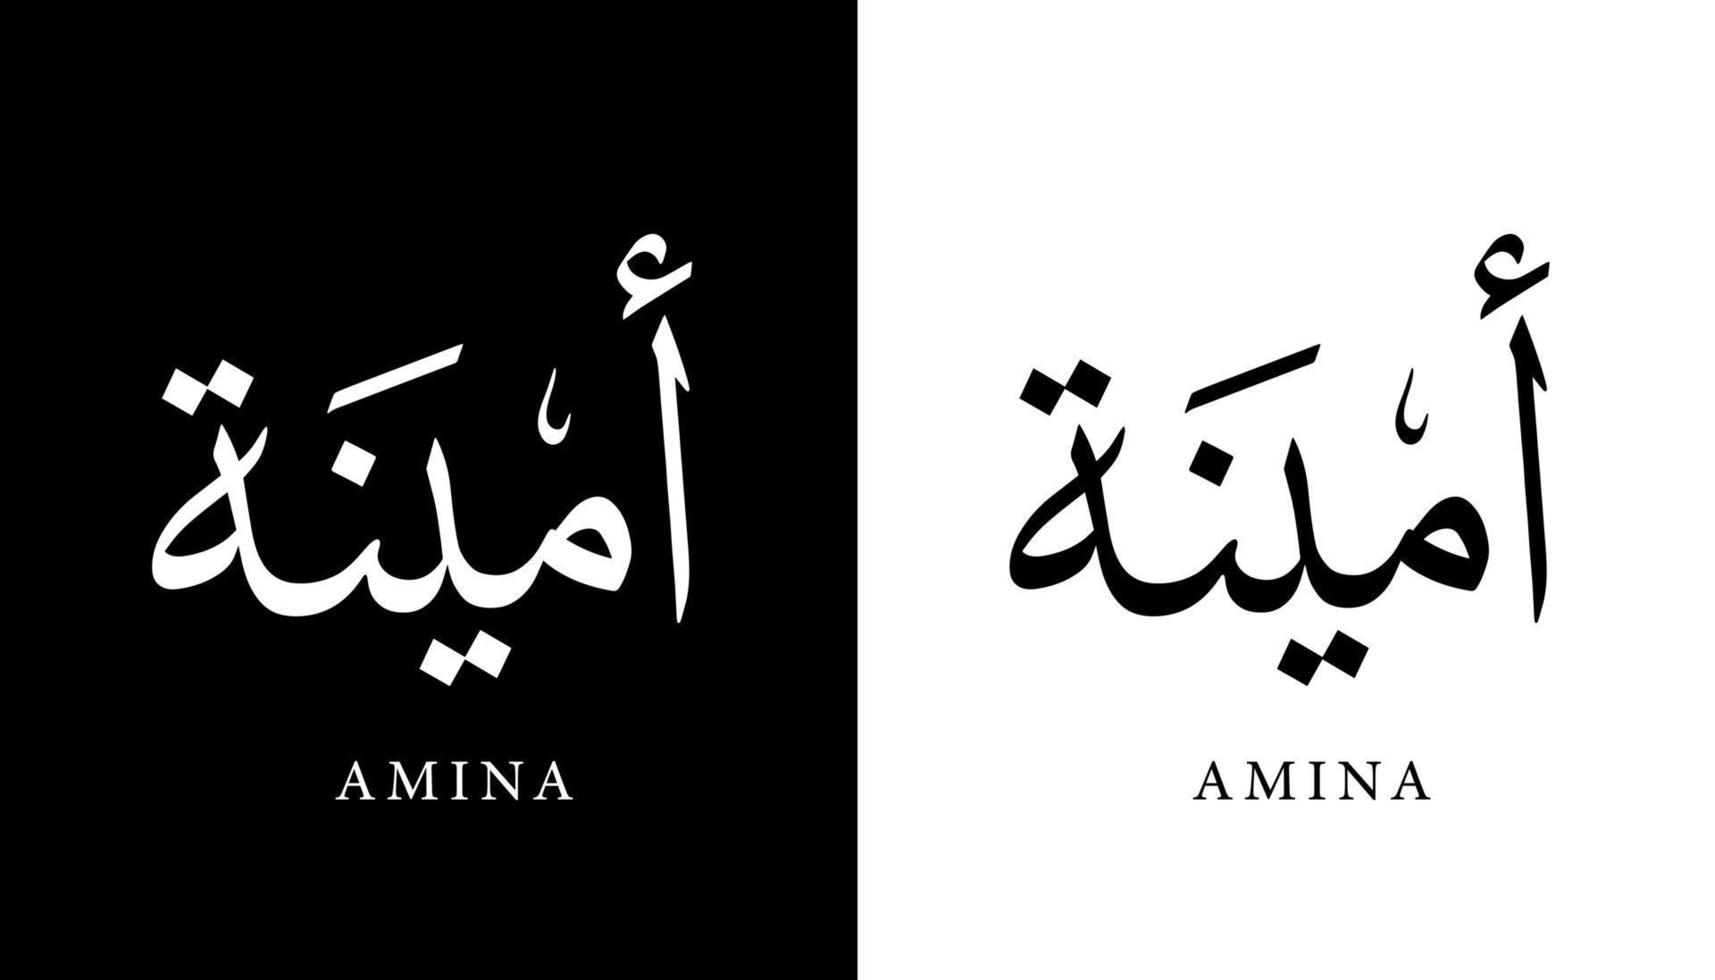 nome de caligrafia árabe traduzido 'amina' letras árabes alfabeto fonte letras ilustração em vetor logotipo islâmico